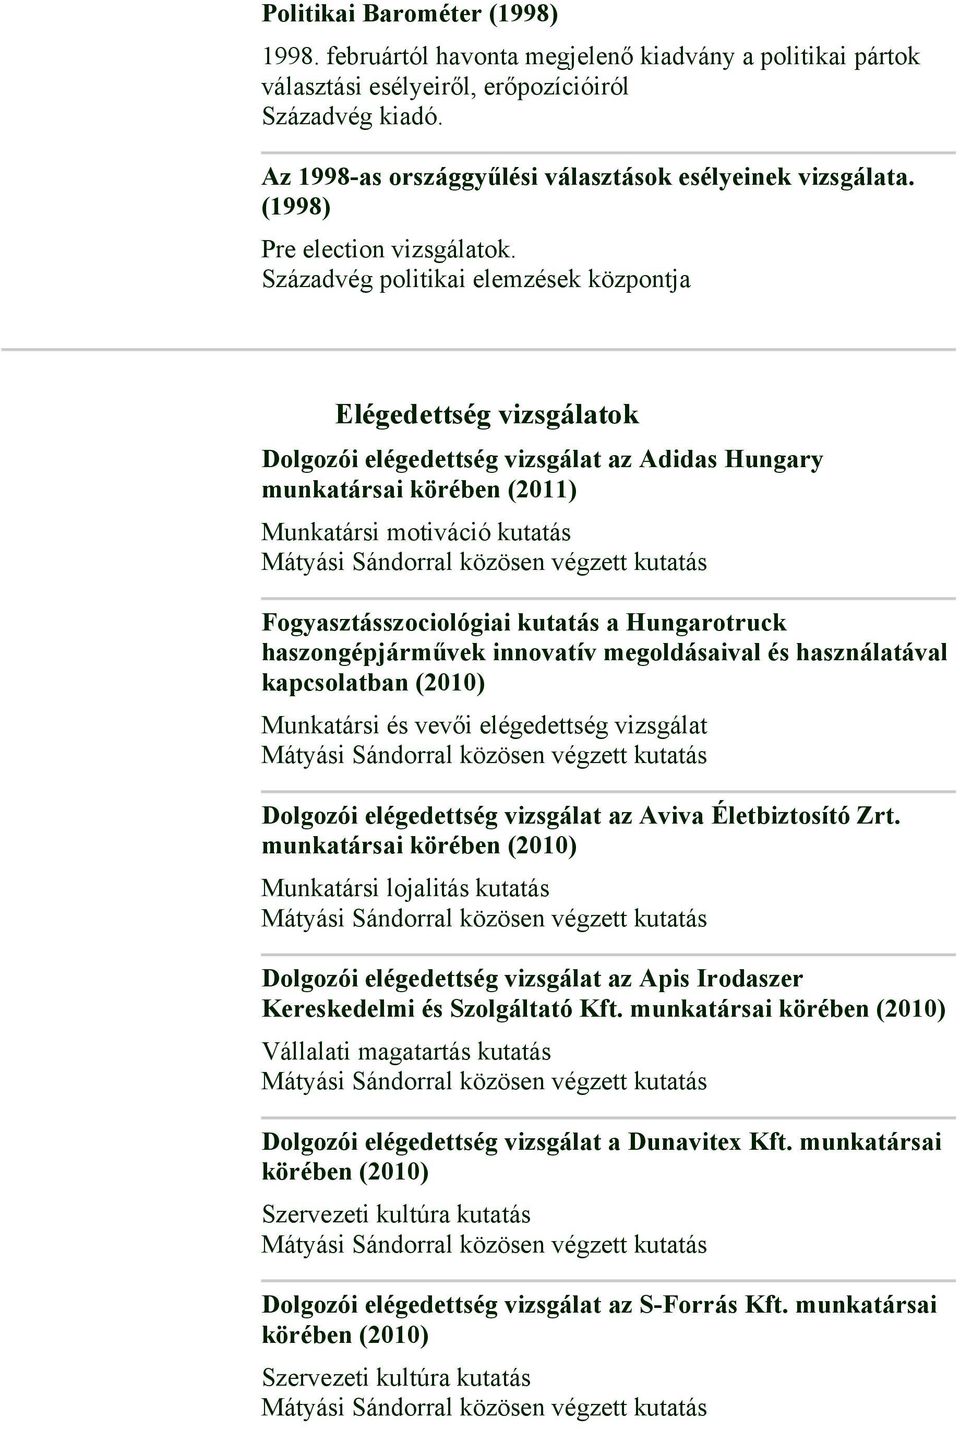 Századvég politikai elemzések központja Elégedettség vizsgálatok Dolgozói elégedettség vizsgálat az Adidas Hungary munkatársai körében (2011) Munkatársi motiváció kutatás Fogyasztásszociológiai